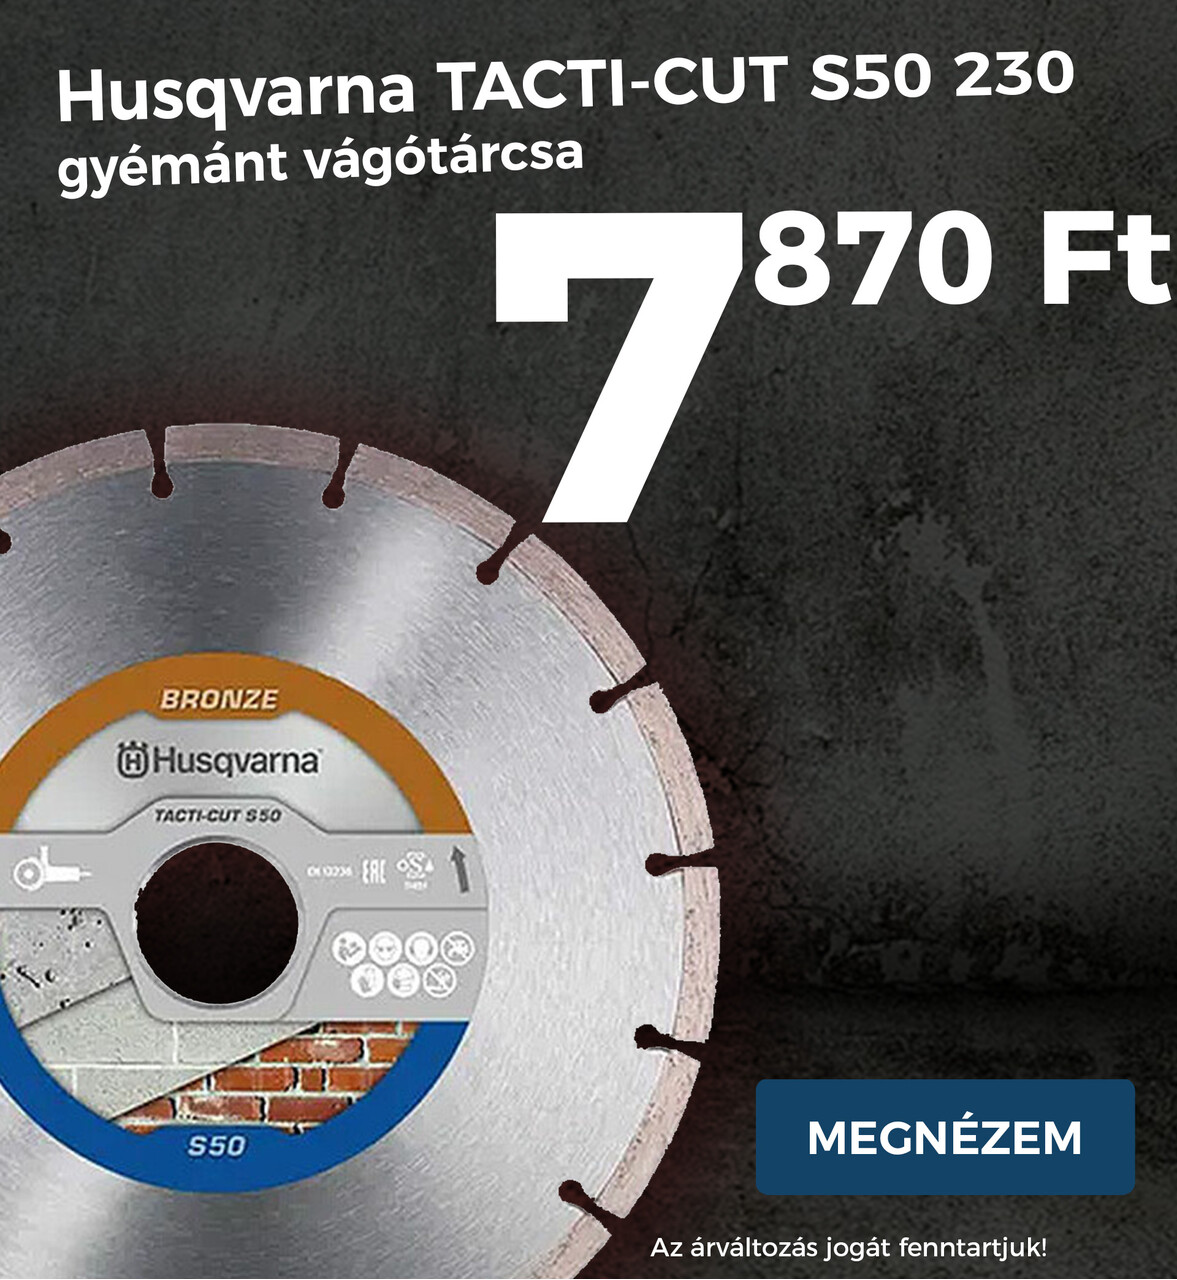 Husqvarna TACTI-CUT S50 230 gyémánt vágótárcsa hu katbanner köztes pc